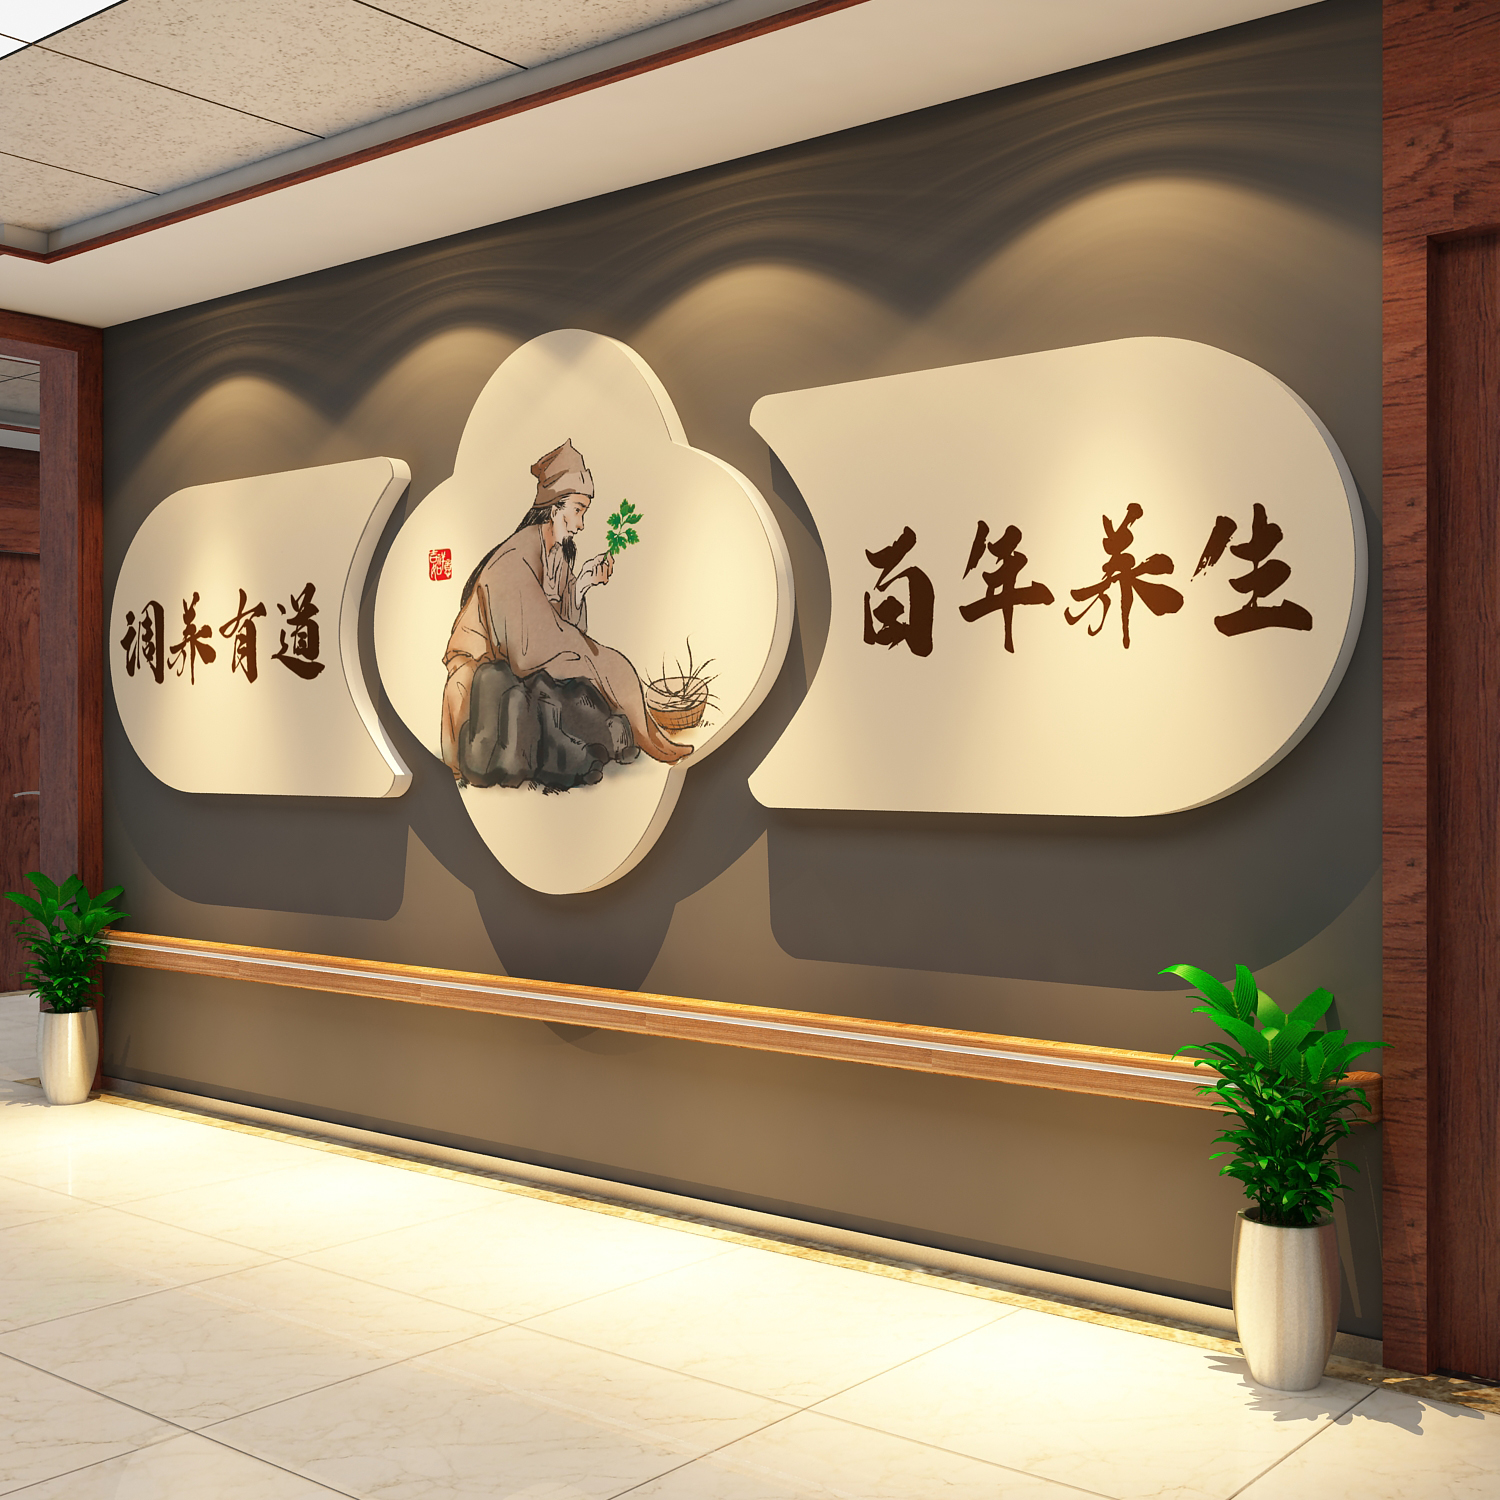 中医药养生馆形象背景墙面装饰修设计院美容氛围房间布置挂画文化